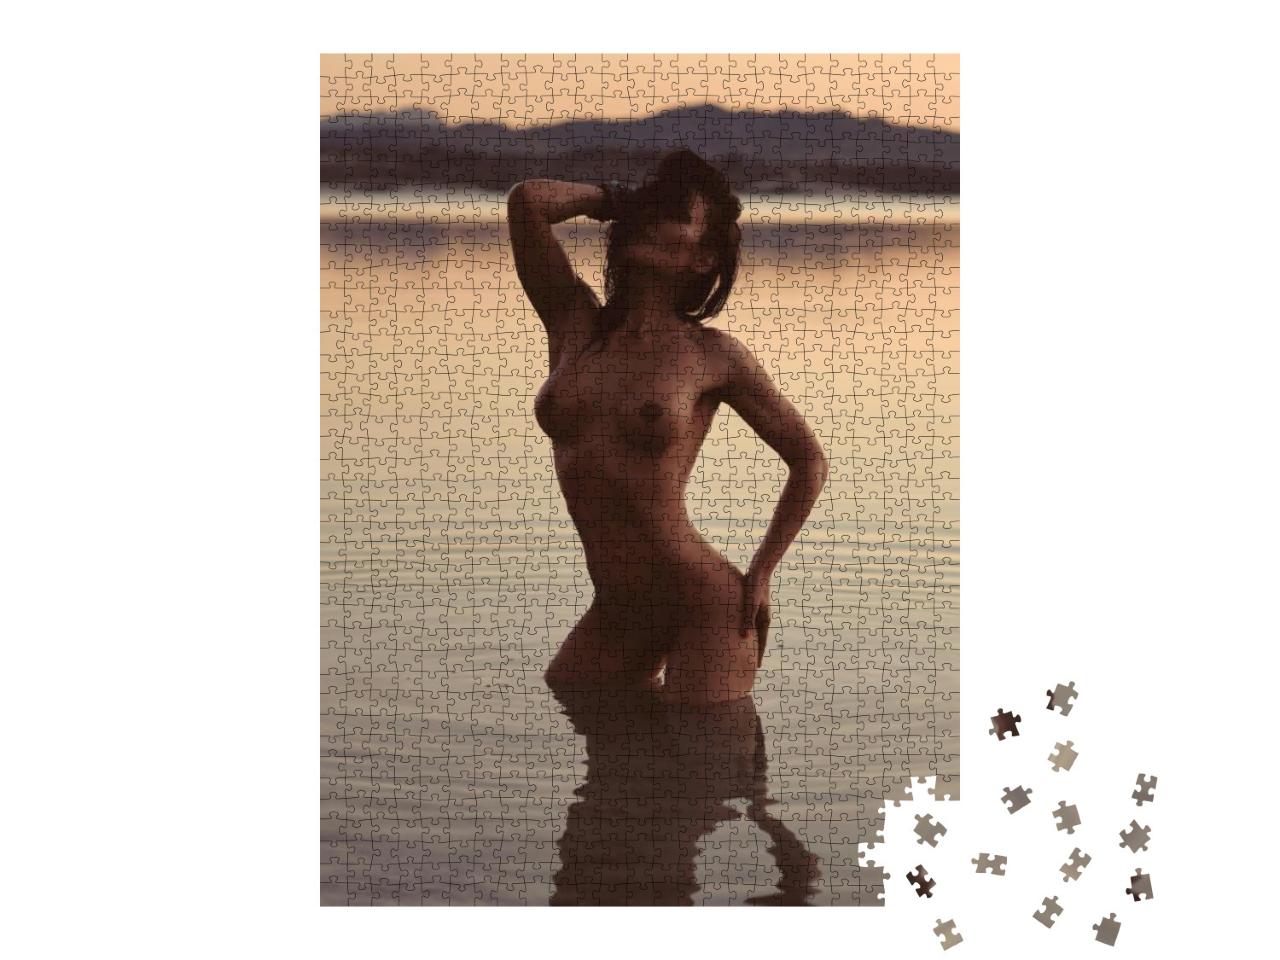 Puzzle 1000 Teile „Erotische Kunst: Nackte Frau im Wasser“